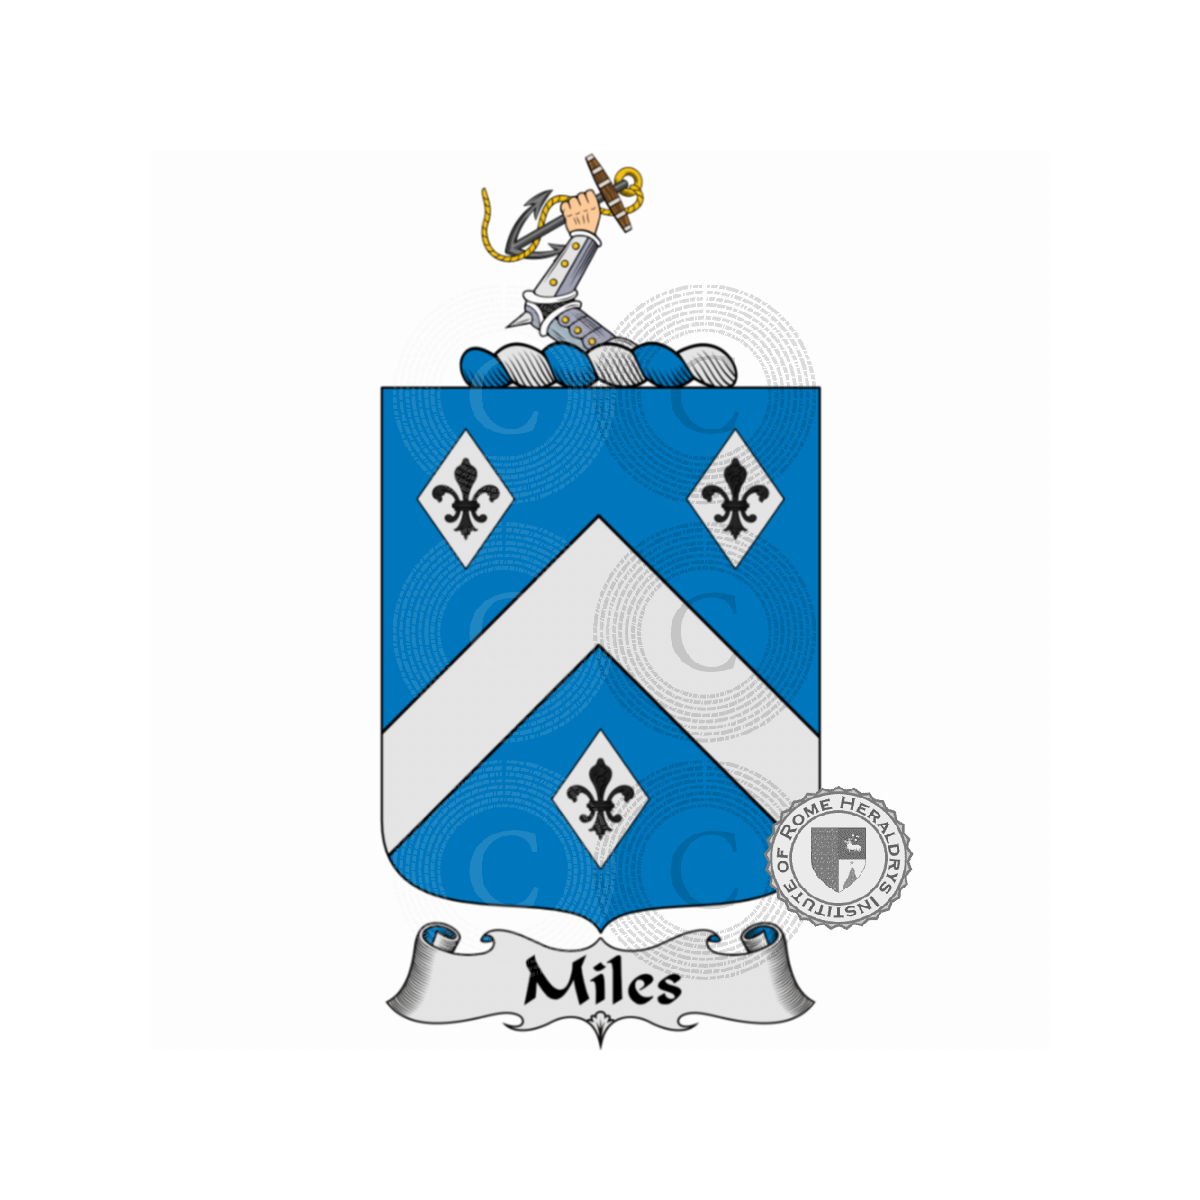 Wappen der FamilieMiles